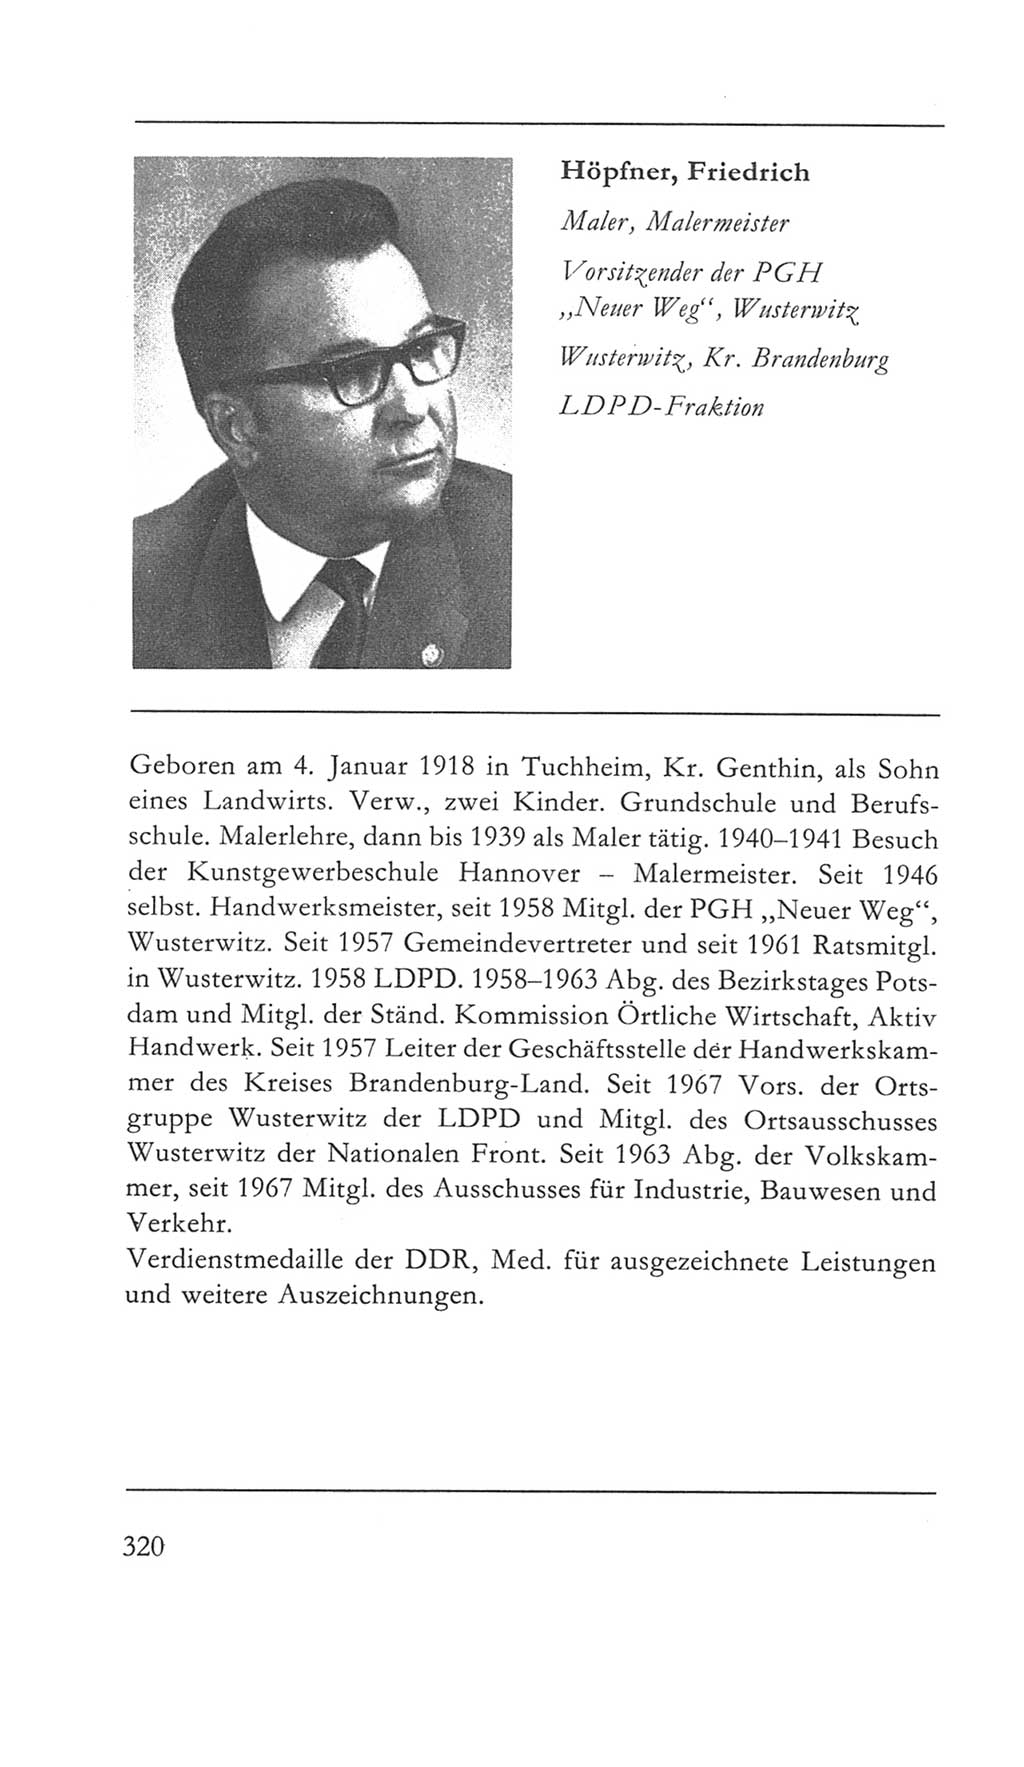 Volkskammer (VK) der Deutschen Demokratischen Republik (DDR) 5. Wahlperiode 1967-1971, Seite 320 (VK. DDR 5. WP. 1967-1971, S. 320)